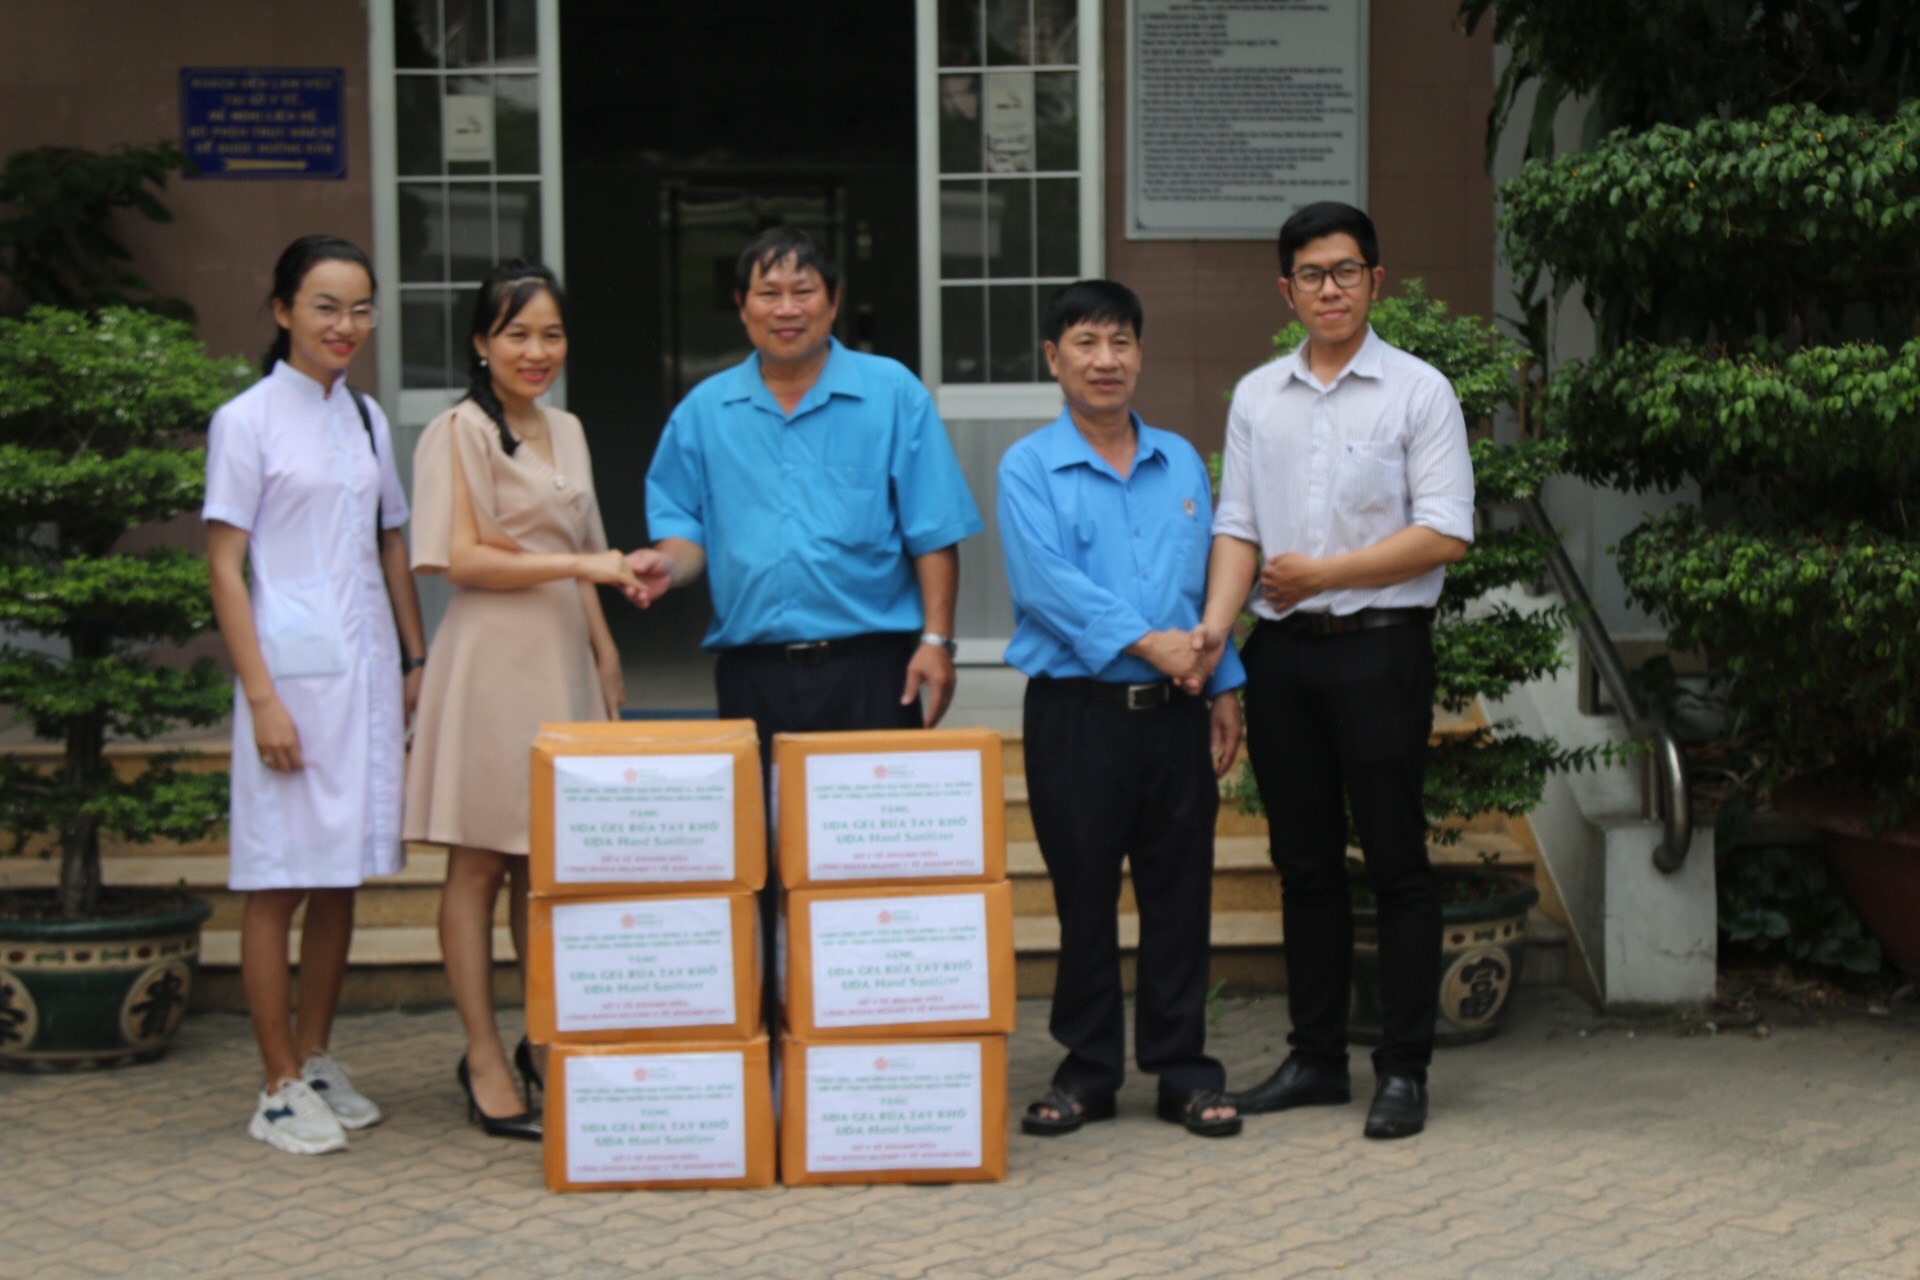 180 chai sát khuẩn khô sẽ được chuyển tới các cơ sở y tế tuyến đầu chống dịch COVID_19 tại Khánh Hòa. Ảnh: Phương Chi